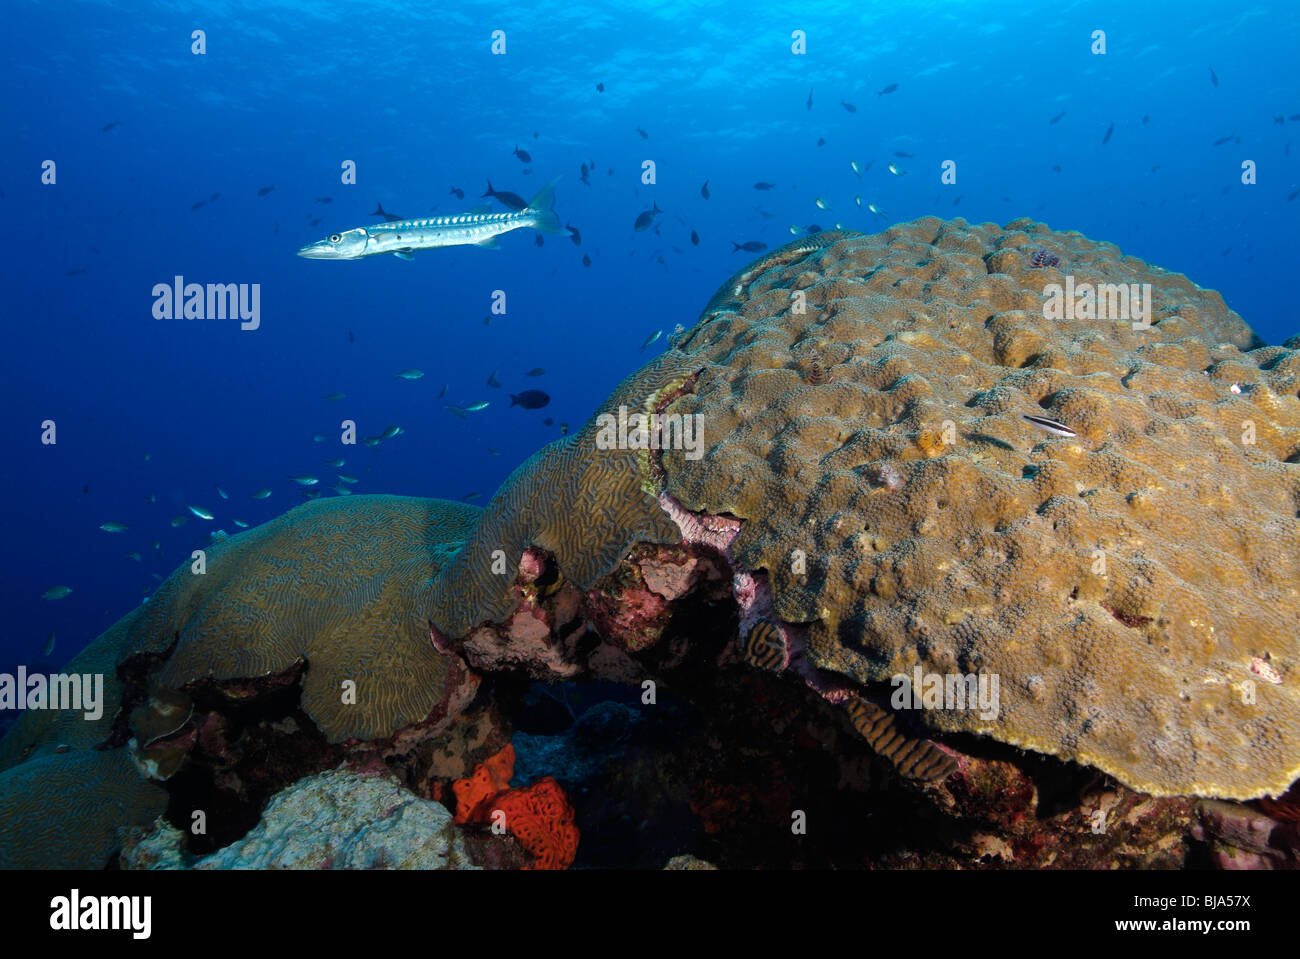 Hard Coral reef nel Golfo del Messico. Foto Stock